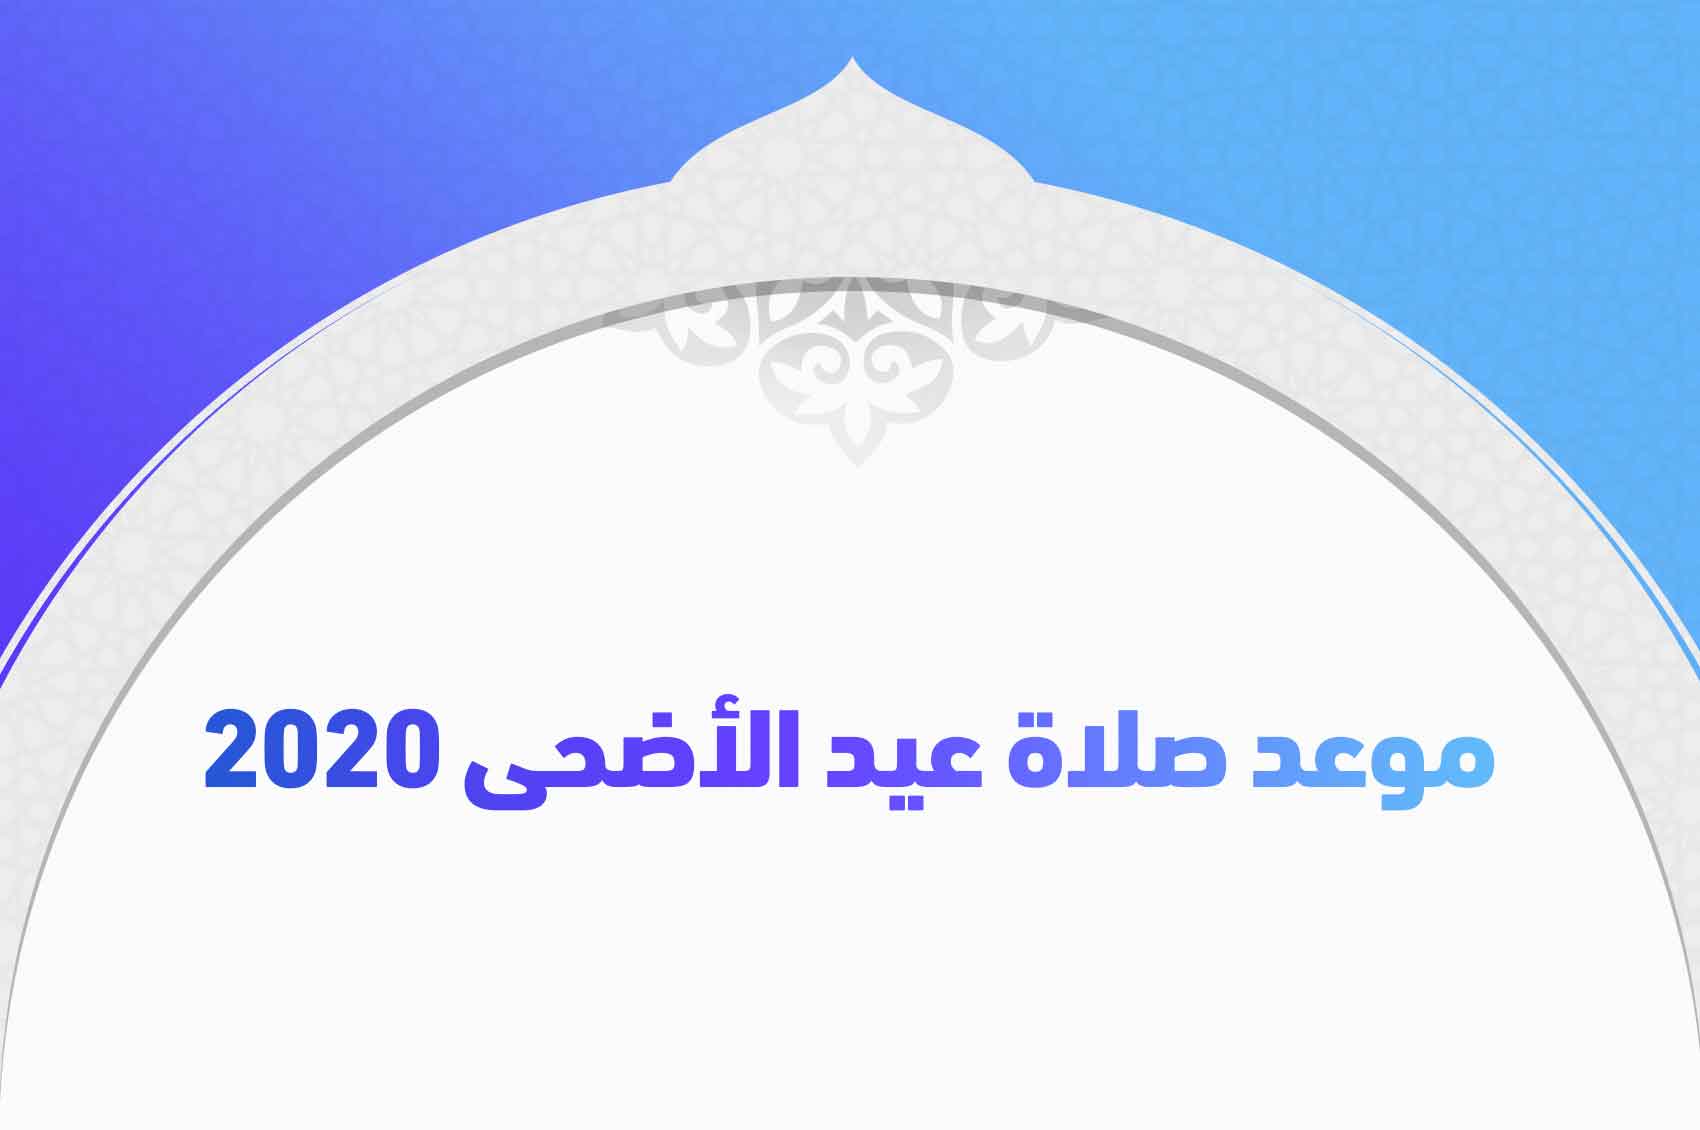 موعد صلاة عيد الأضحى 2020 في جميع محافظات جمهورية مصر العربية